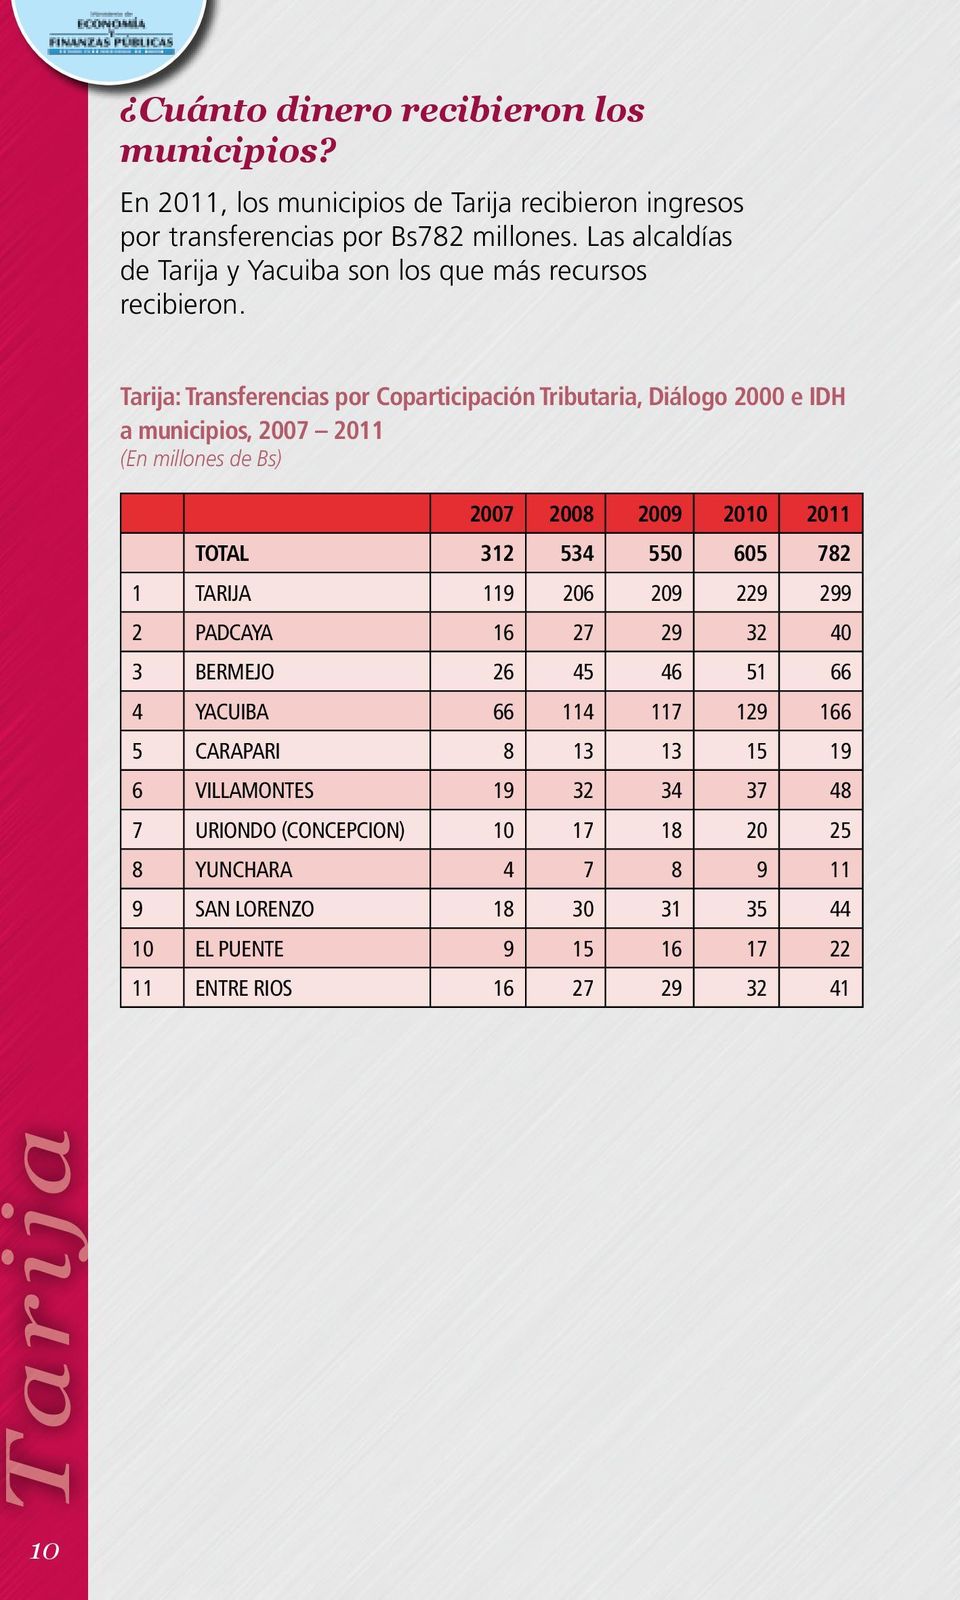 Tarija: Transferencias por Coparticipación Tributaria, Diálogo 2000 e IDH a municipios, 2007 2011 (En millones de Bs) 2007 2008 2009 2010 2011 TOTAL 312 534 550 605 782 1